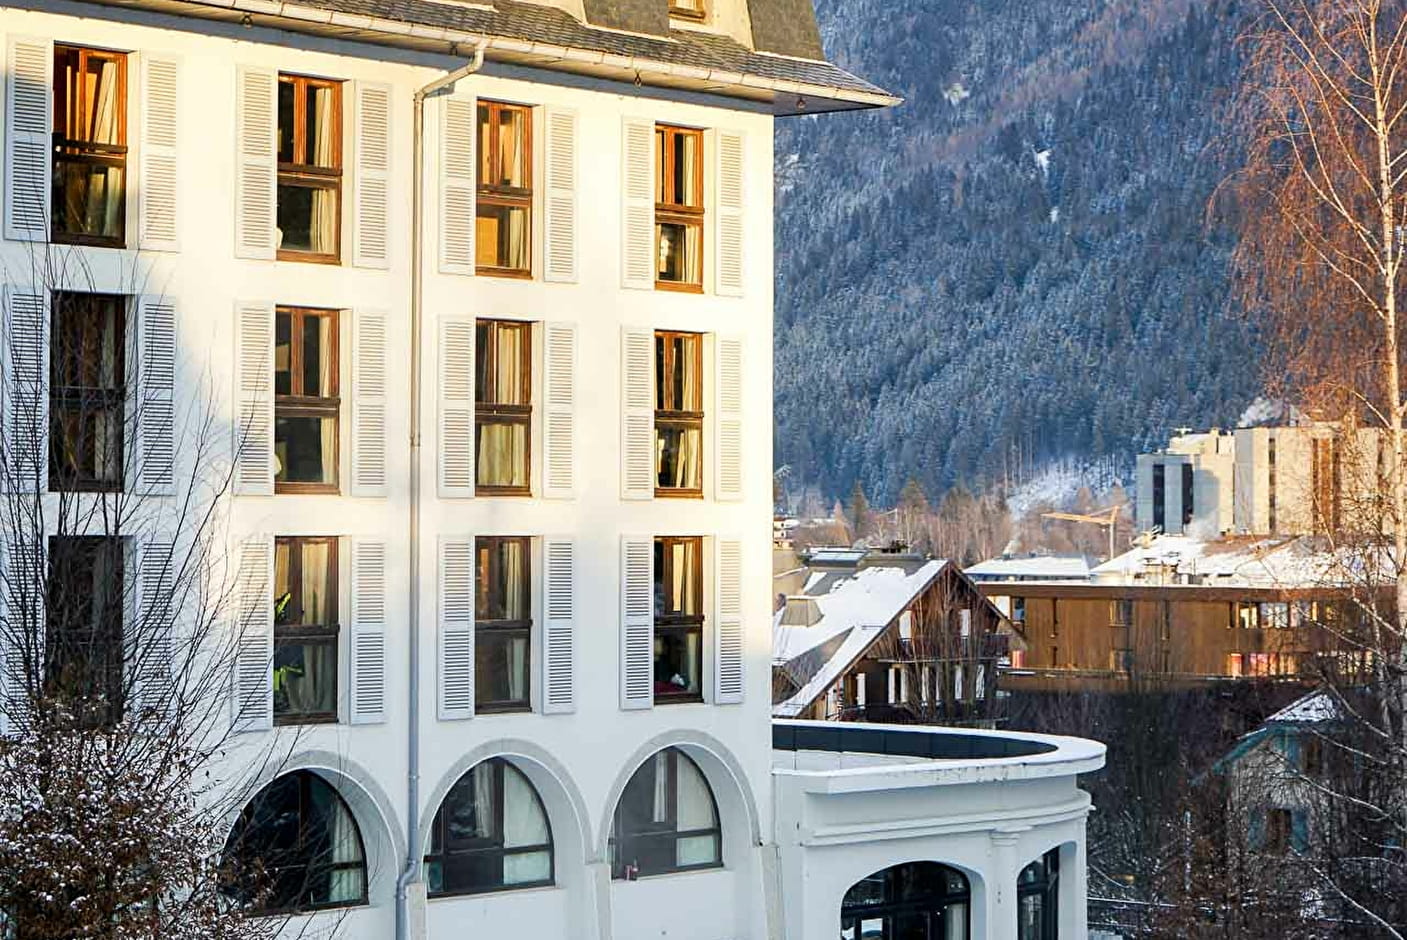 La Folie Douce Hotels, Living Place, Mont Blanc